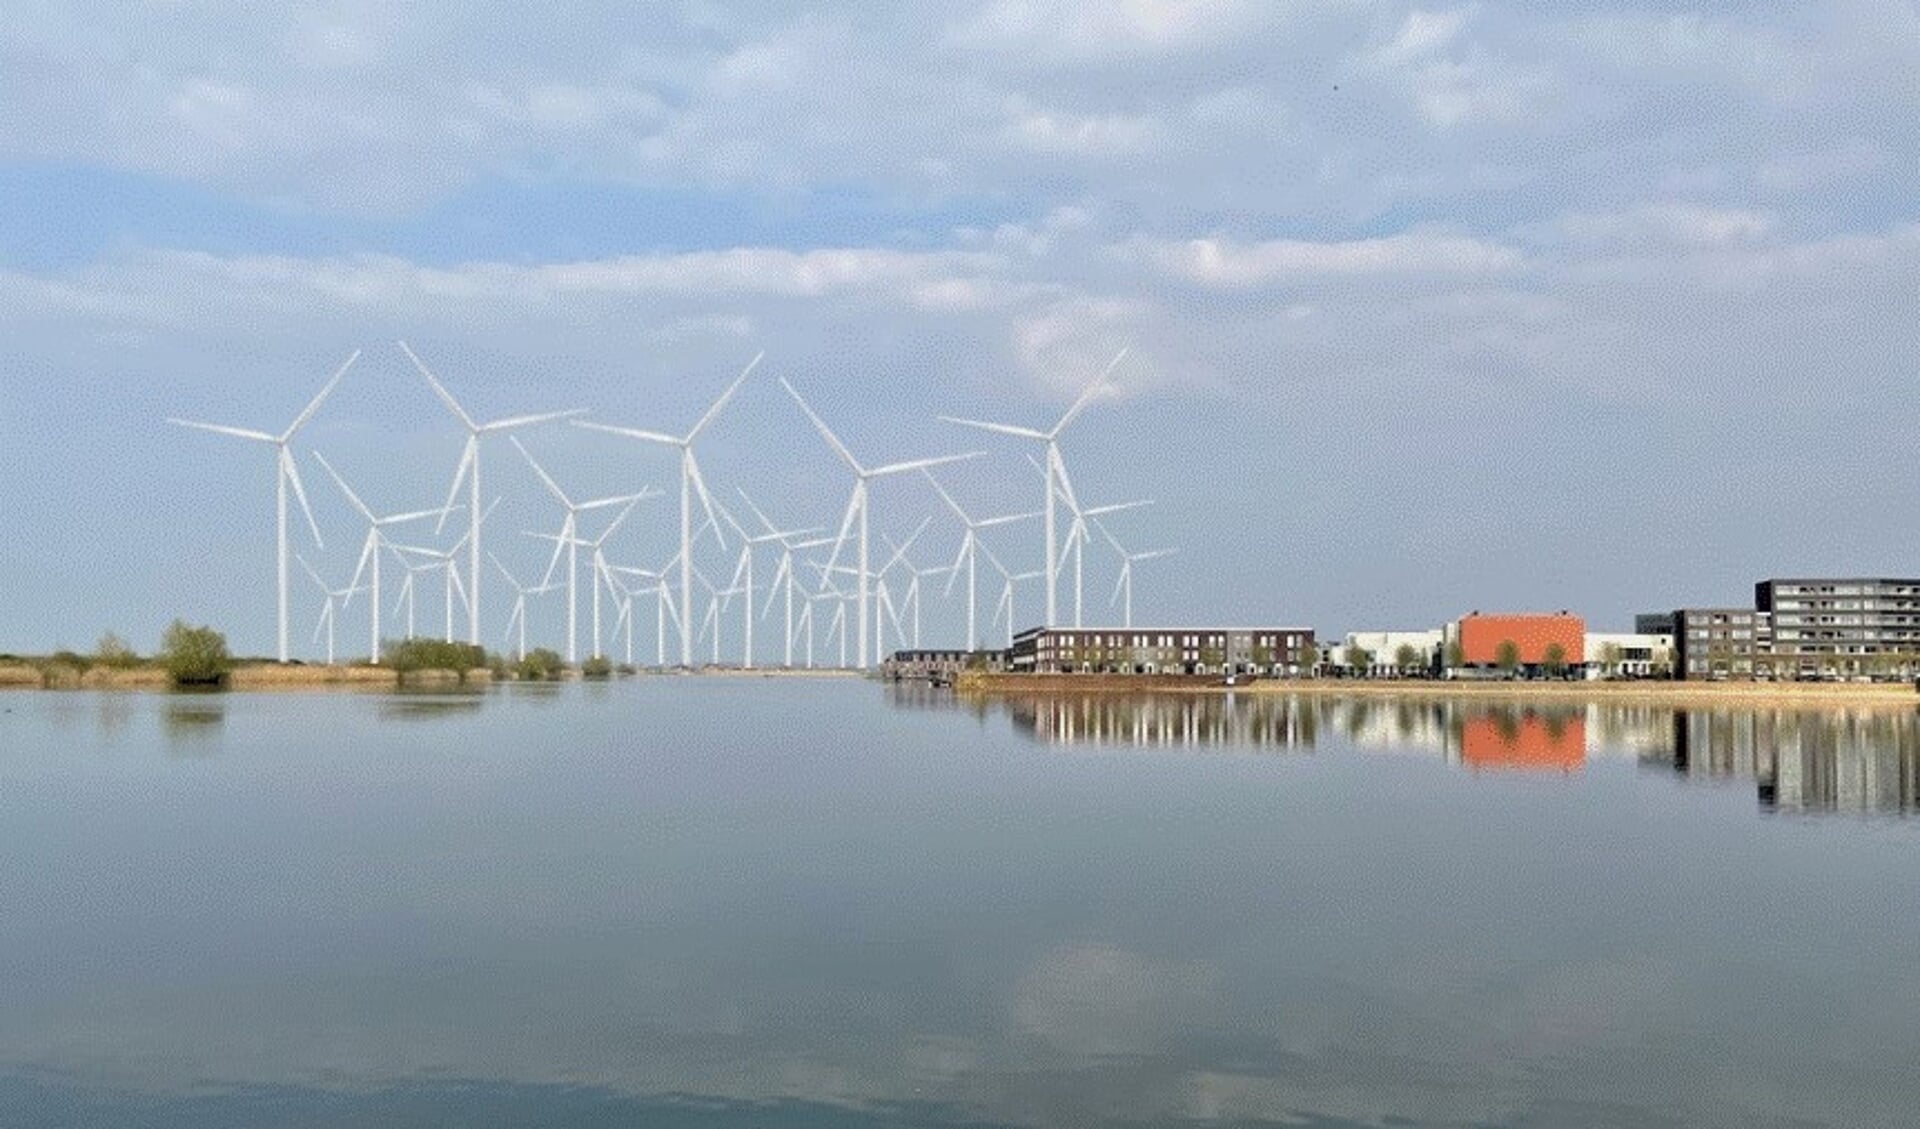 Impressie van de 260 meter hoge windturbines op één kilometer afstand van de wijk De Groote Wielen.